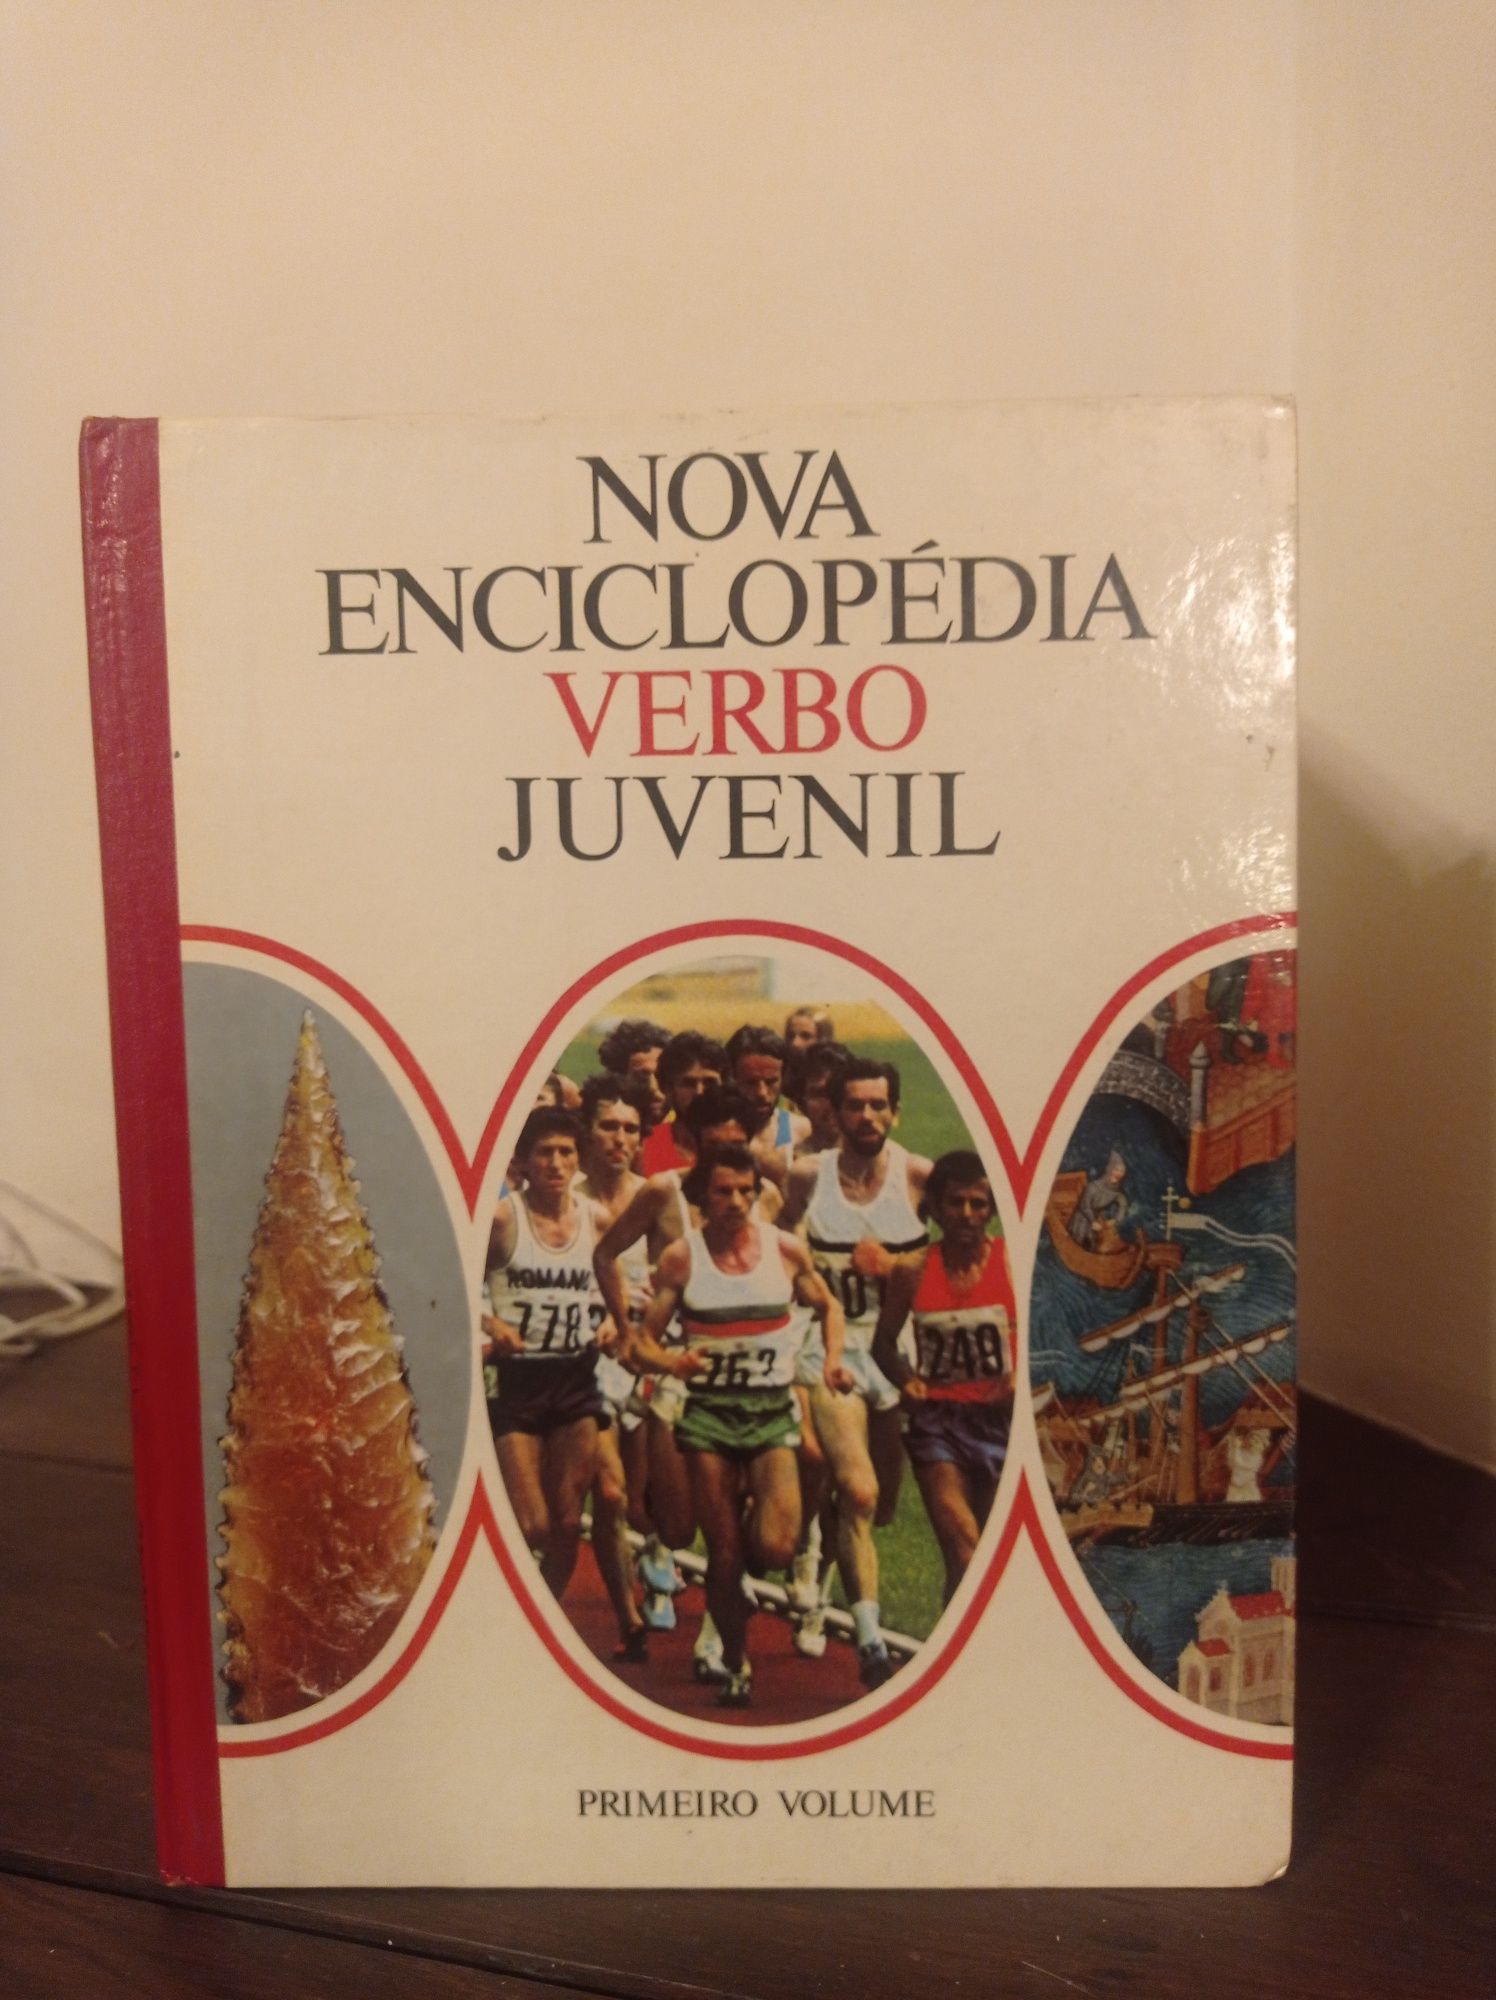 Enciclopédia juvenil